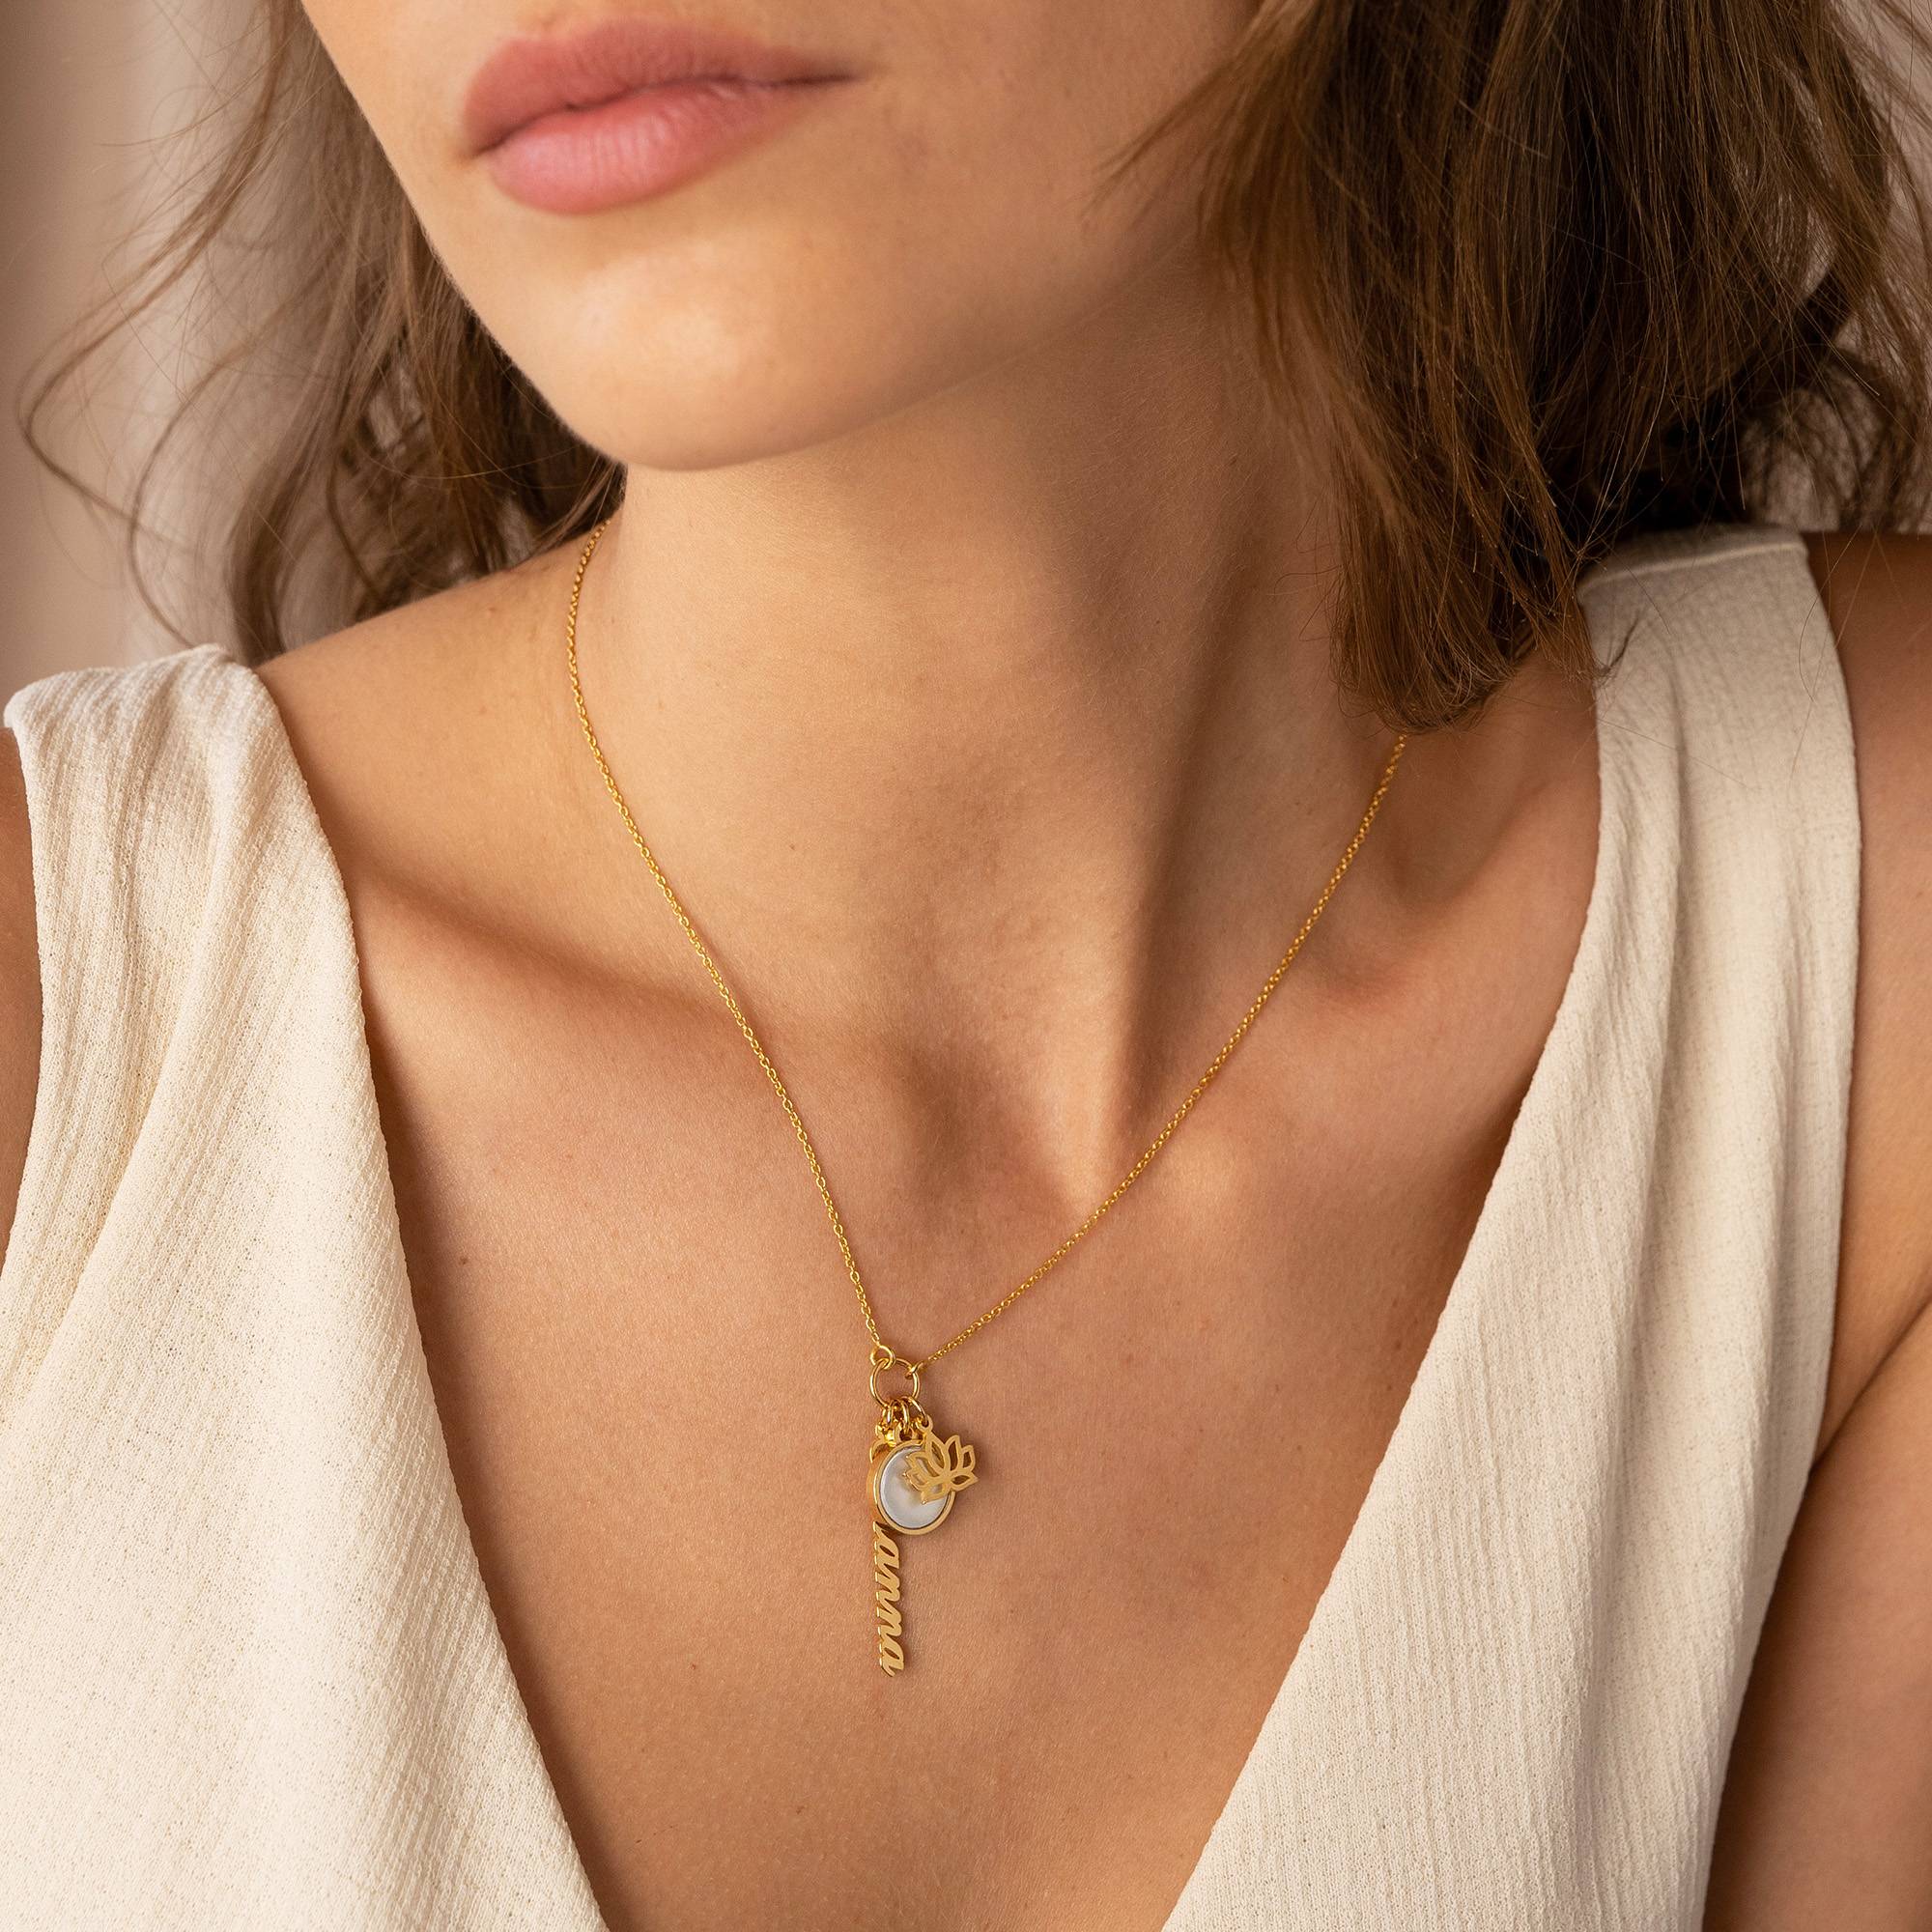 Collar de nombre simbólico con piedra semipreciosa en oro vermeil de 18 quilates-3 foto de producto